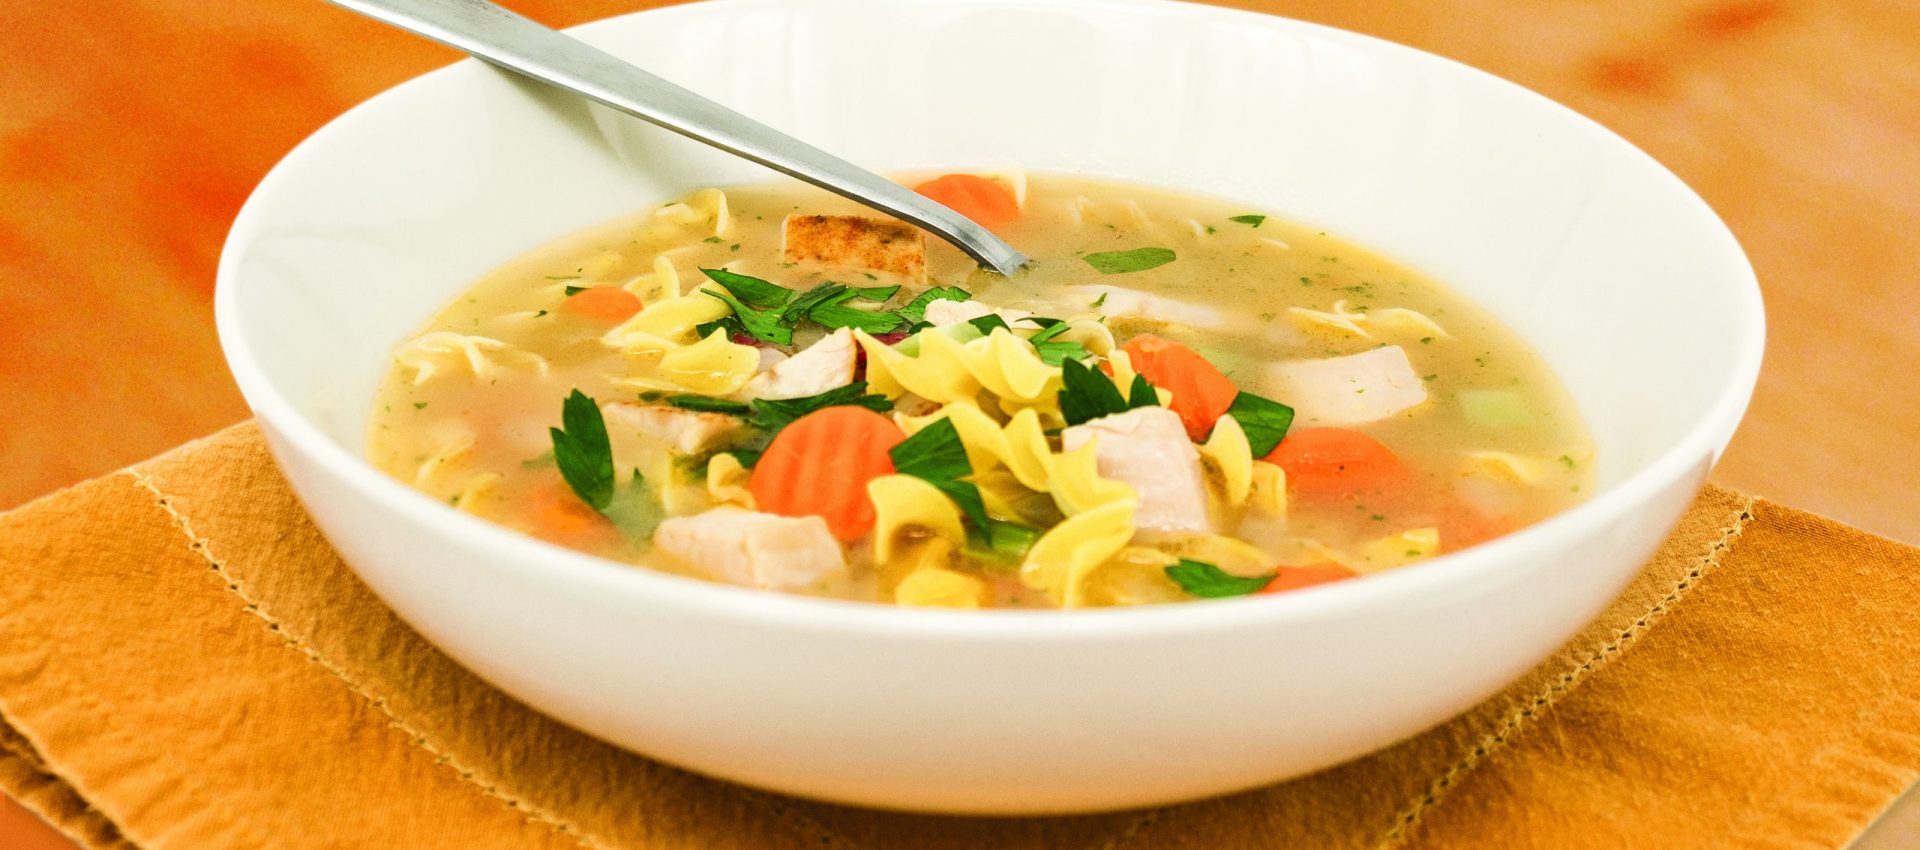 IMG_2043_V0R0_F-1-scaled-1920x850 Turkey Noodle Soup